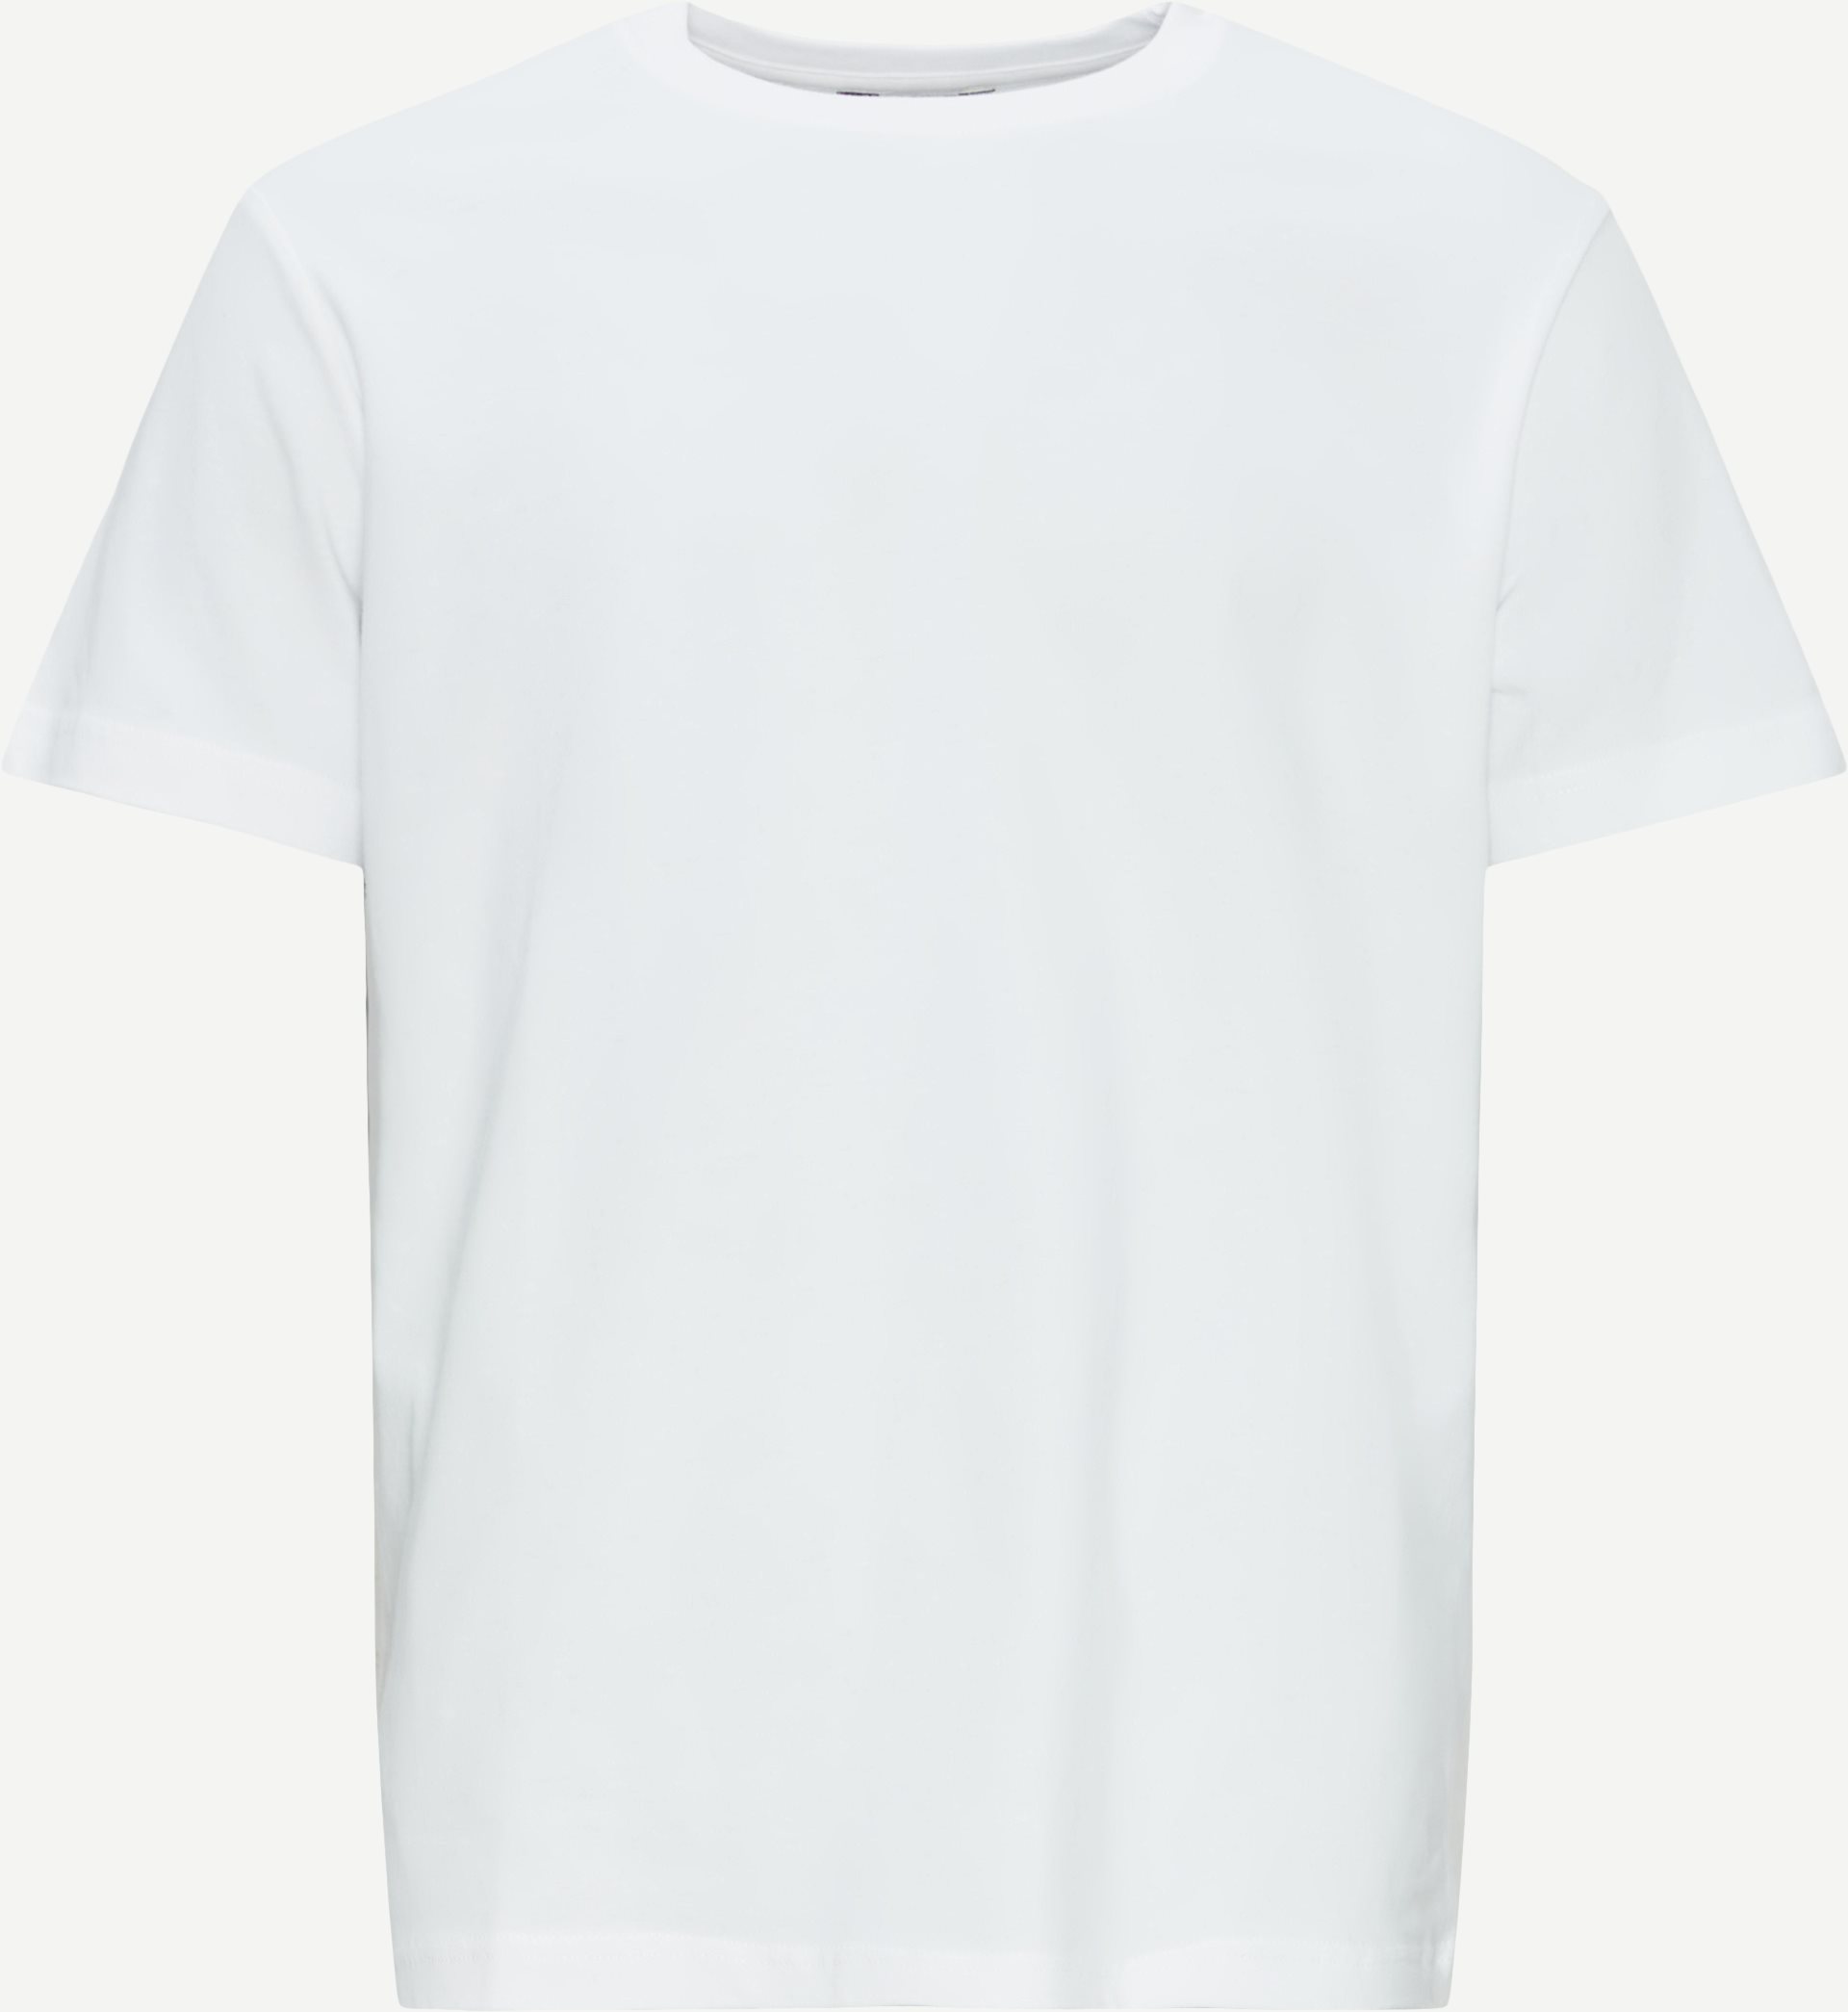 A.C.T. SOCIAL T-shirts TOBIAS AS1008 White